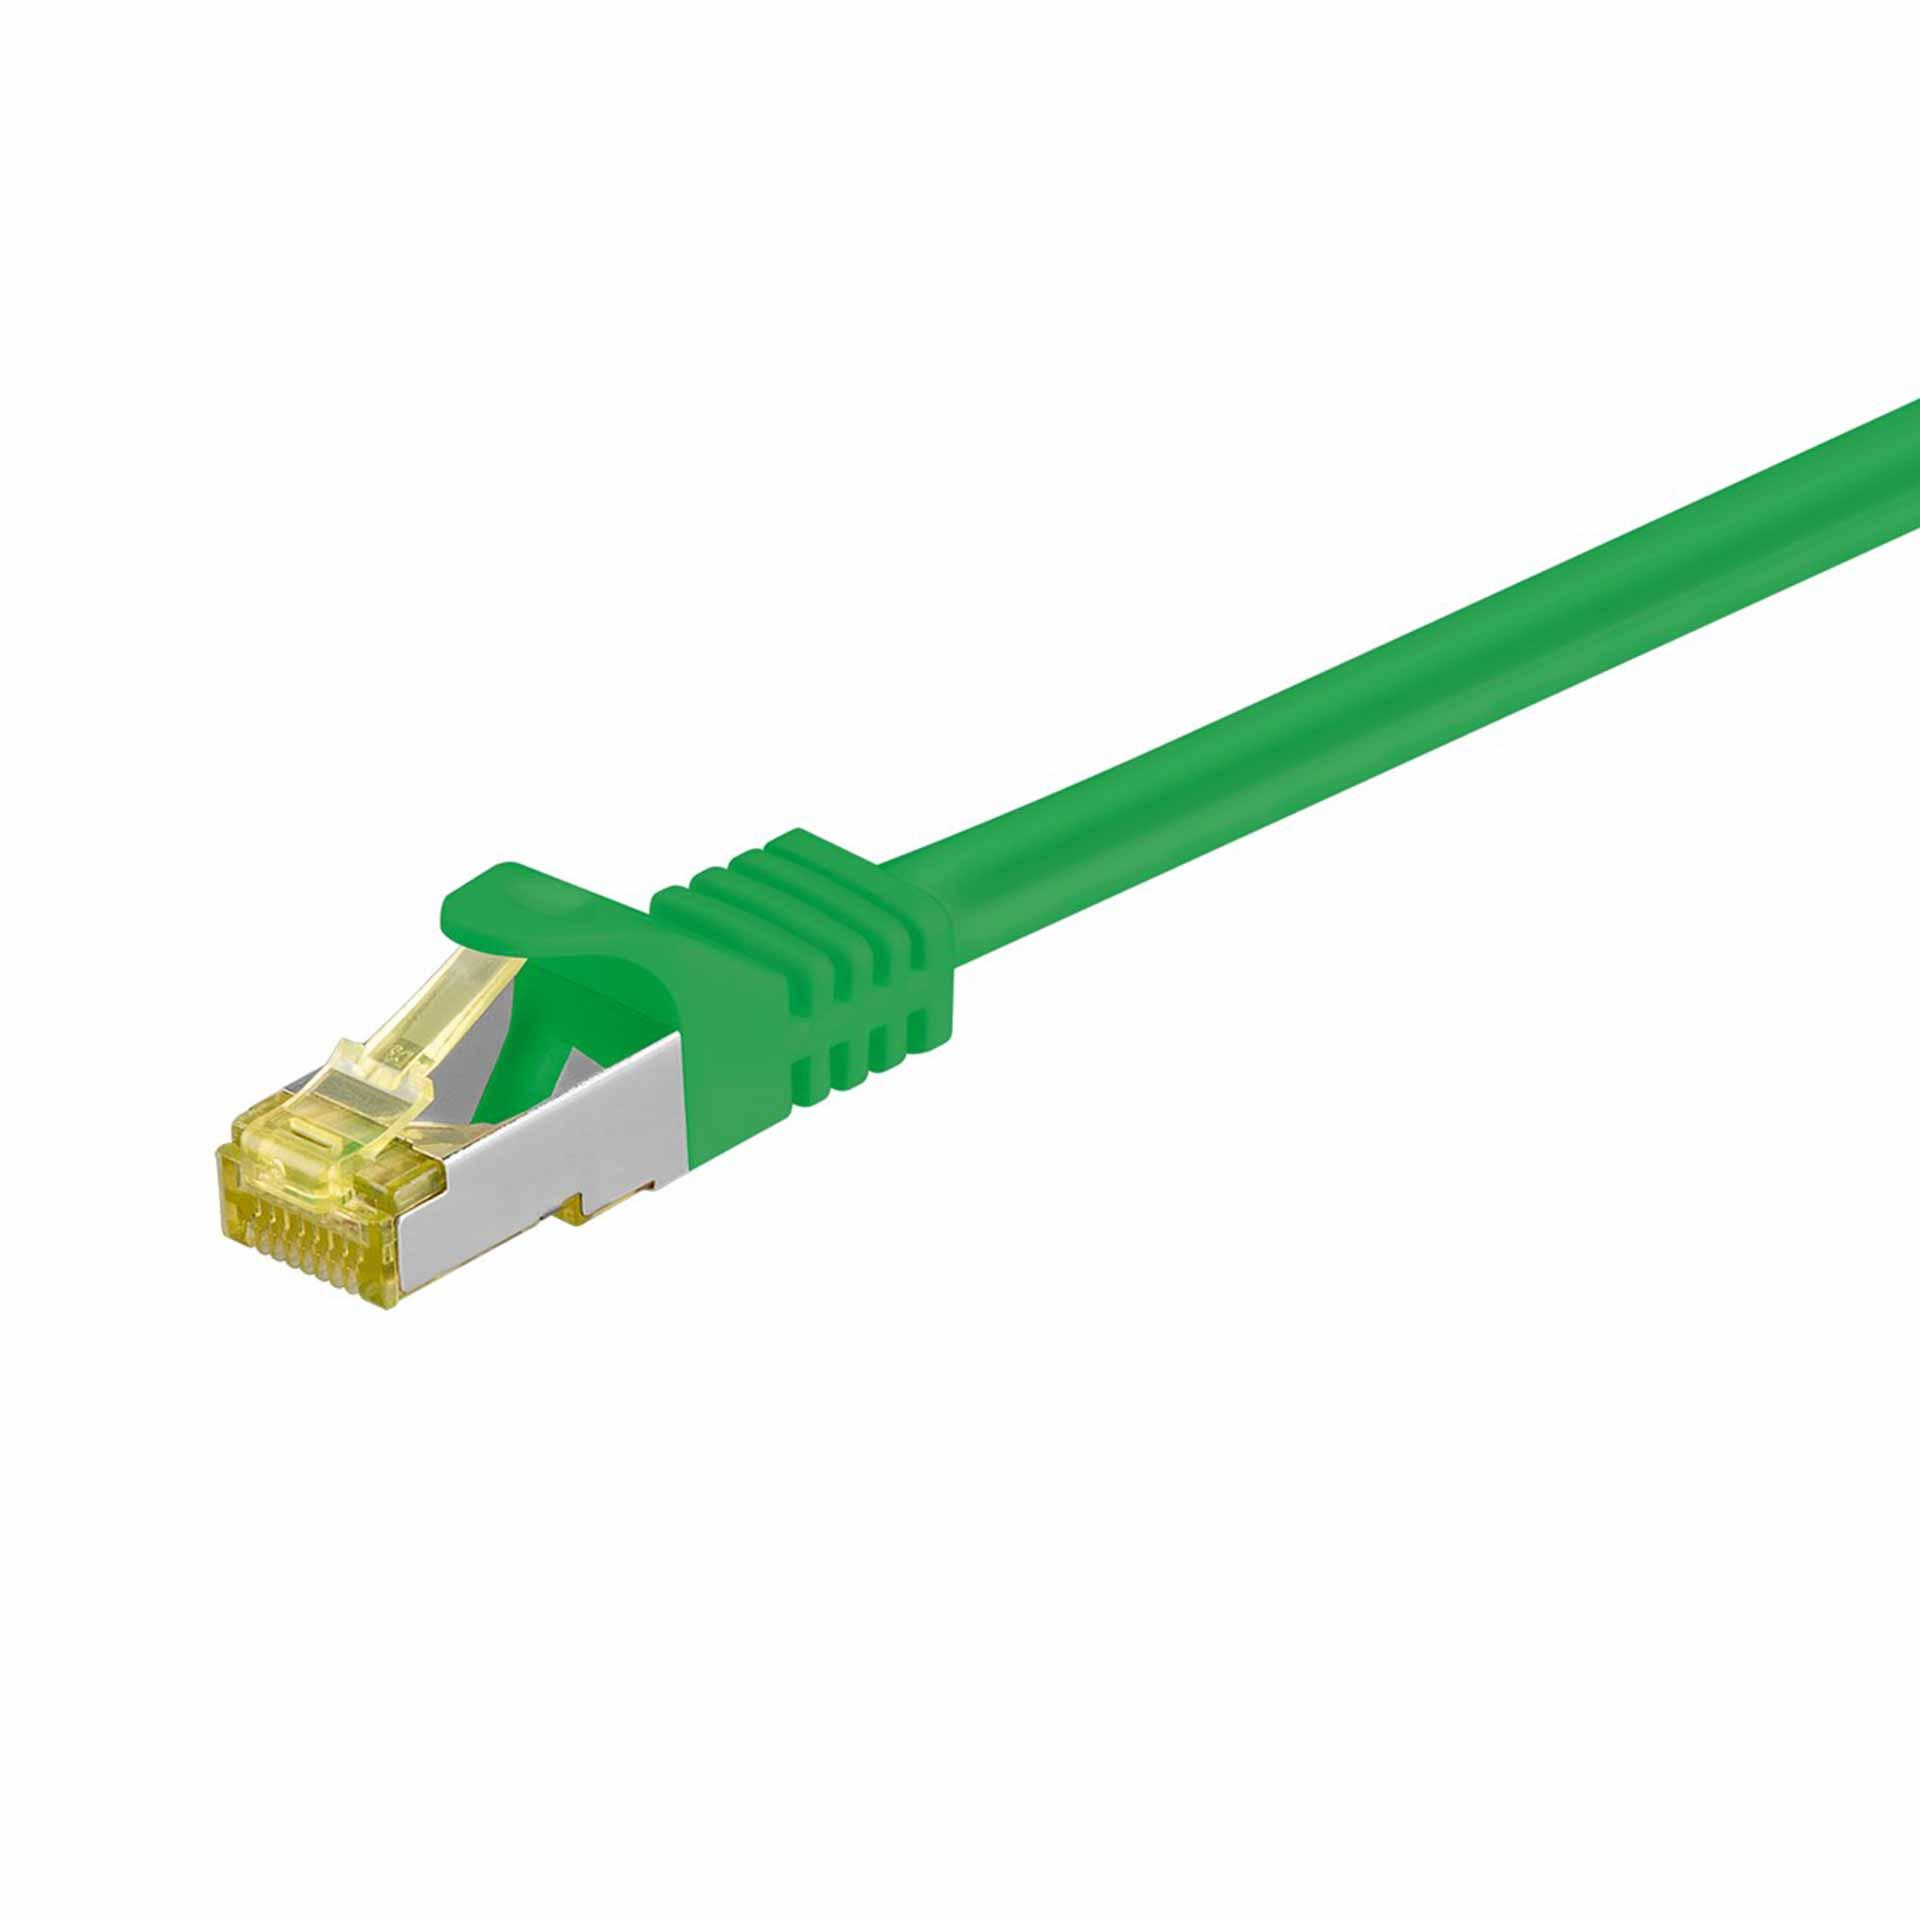 CAT 6A câble de raccordement S/FTP (PiMF),250mm, vert, LSZH sans halogène, 500 Mhz, câble brut CAT 7